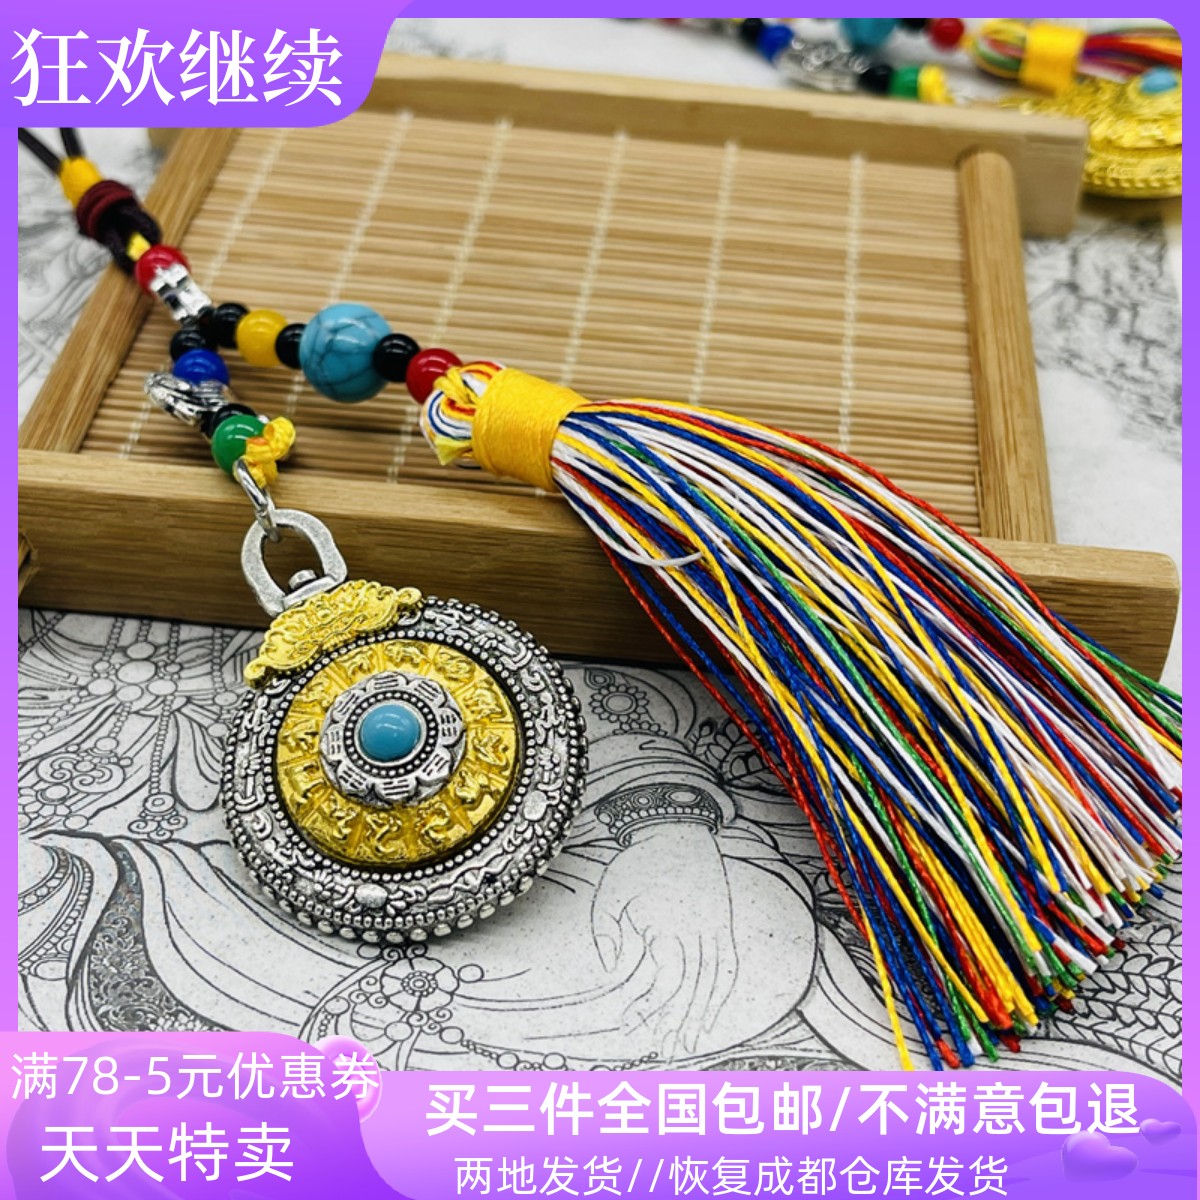 西藏特色旅游纪念品八卦牌吊坠十二生肖通用包挂件钥匙扣挂坠礼品